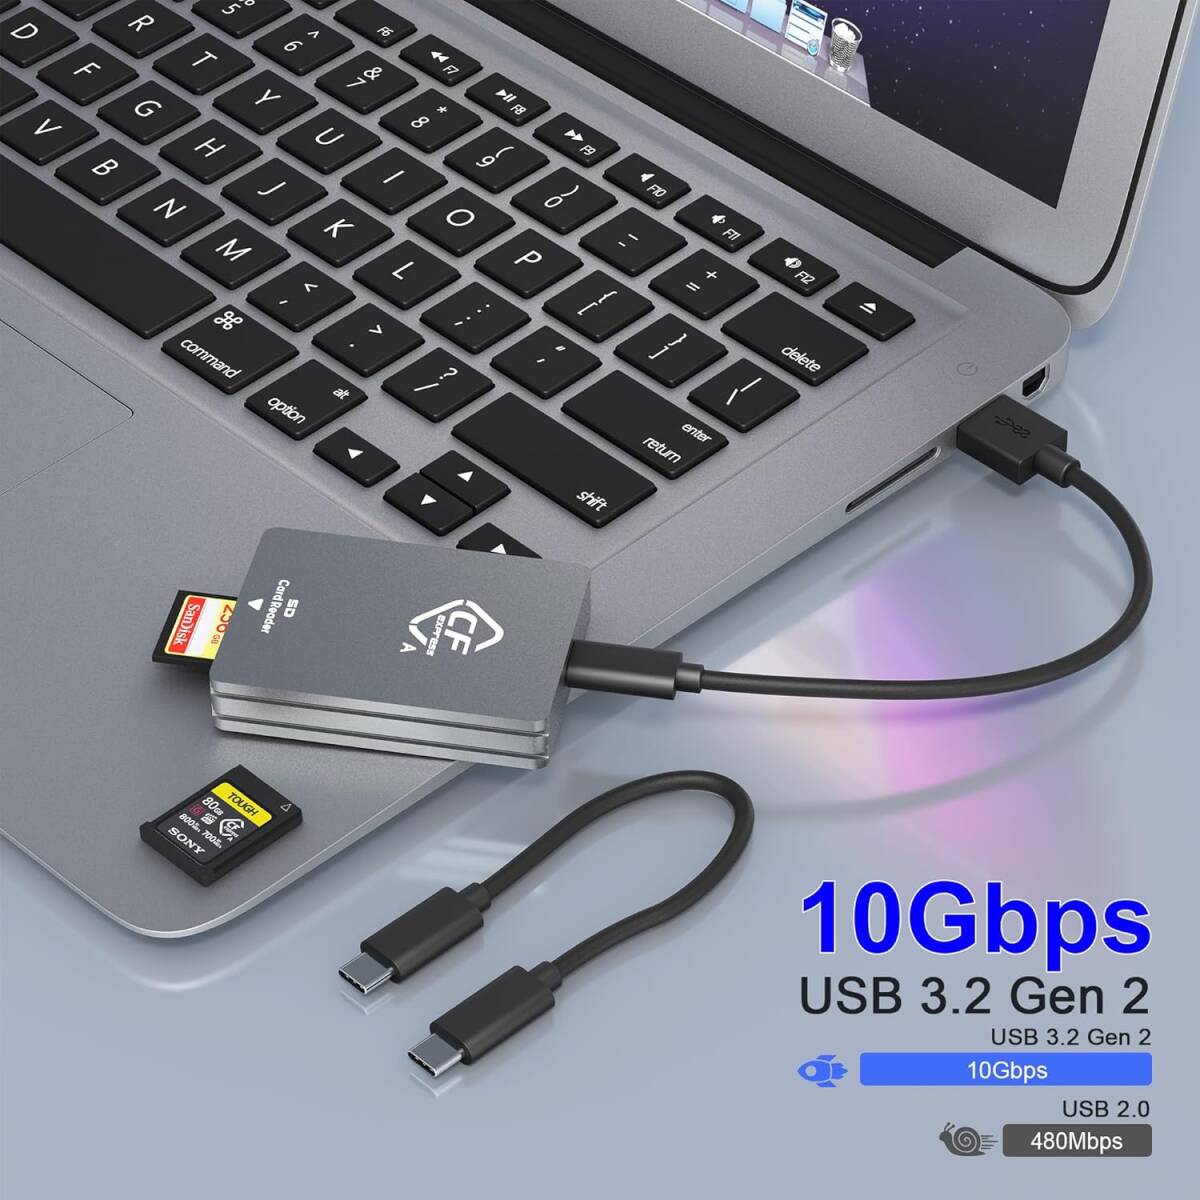 CFexpressタイプA SD カードリーダー USB C、デュアルスロットUSB 3.2 10Gbps